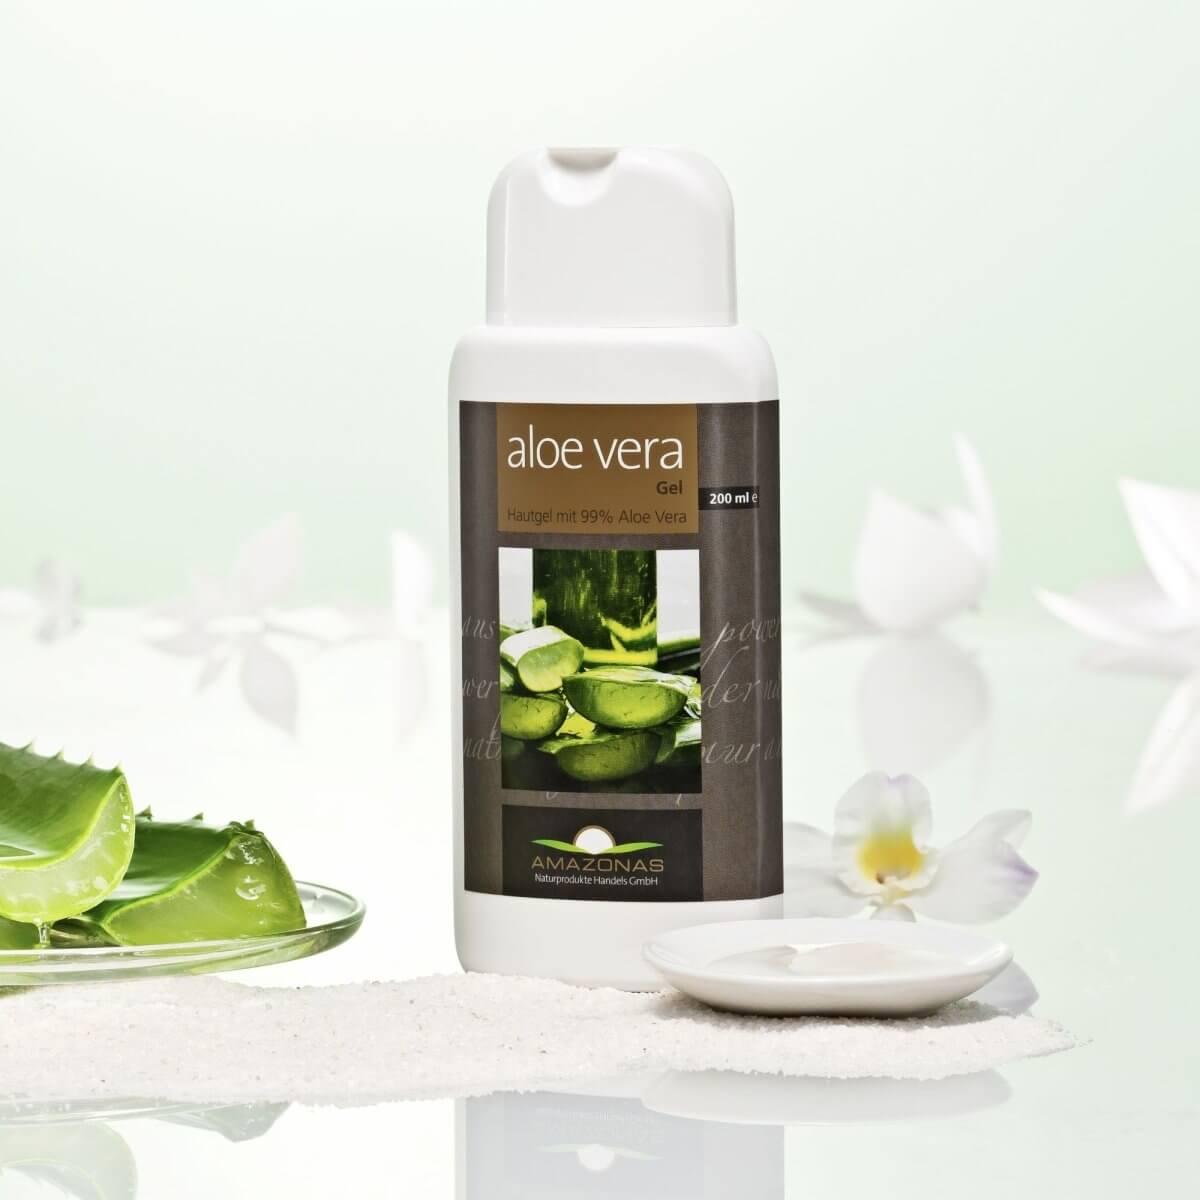 Aloe Vera Hautgel 99% 200 ml - Amazonas Naturprodukte Handels GmbH